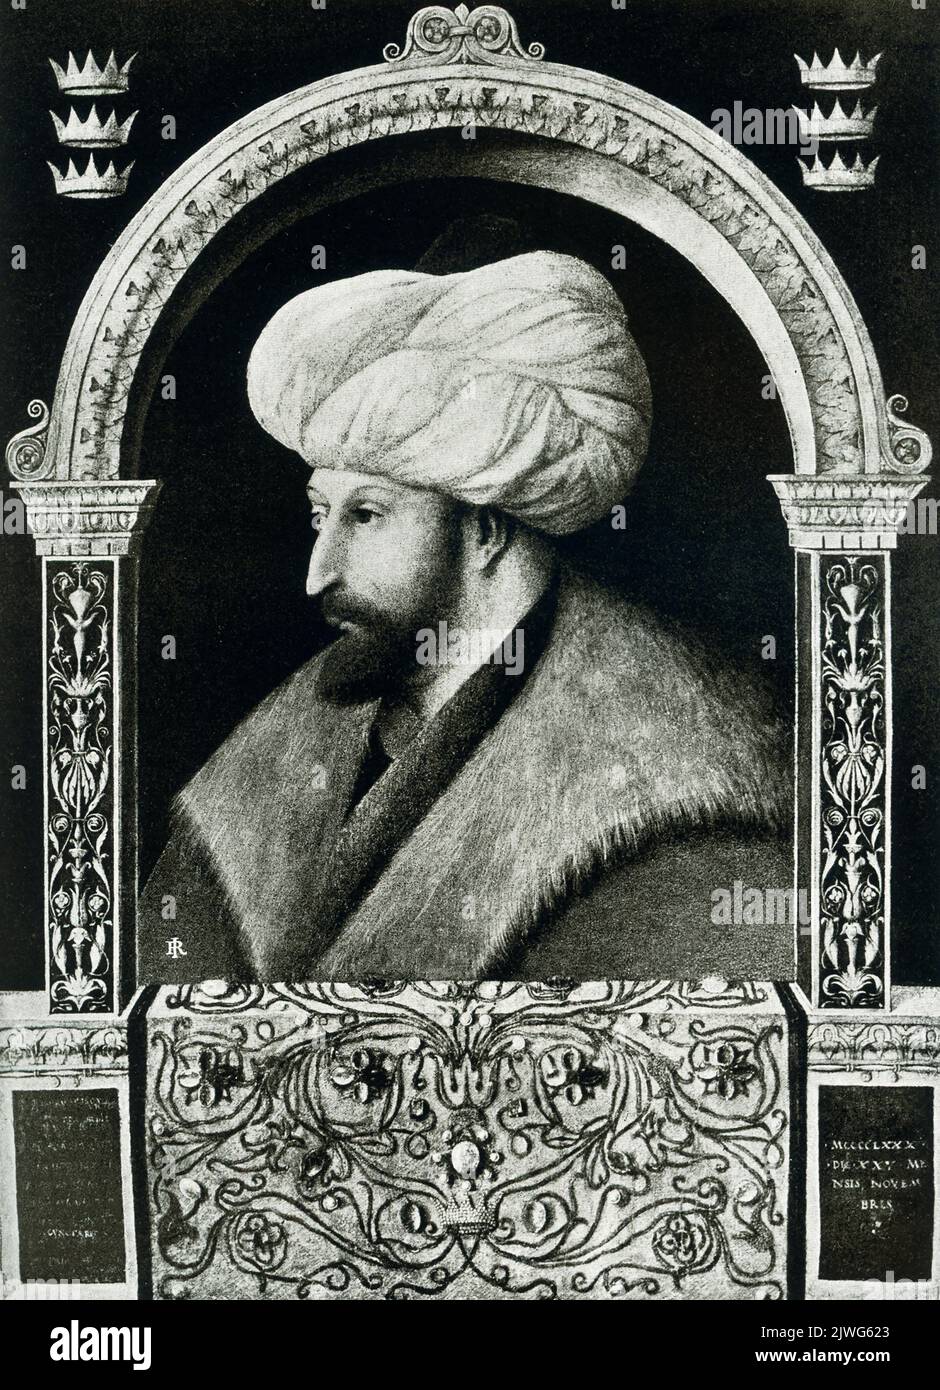 Die Bildunterschrift für dieses Bild von 1910 lautet: „Der Sultan Muhammed II. Gemalt von Gentile Bellini --- jetzt in Rom untergebracht.“ Mohammed II. (1432-1481), genannt Glaube oder Eroberer, war von 1451 bis 1481 der osmanische türkische Sultan. Seine Eroberung Konstantinopels im Jahr 1453 garantierte die Konsolidierung des Osmanischen Reiches. Stockfoto